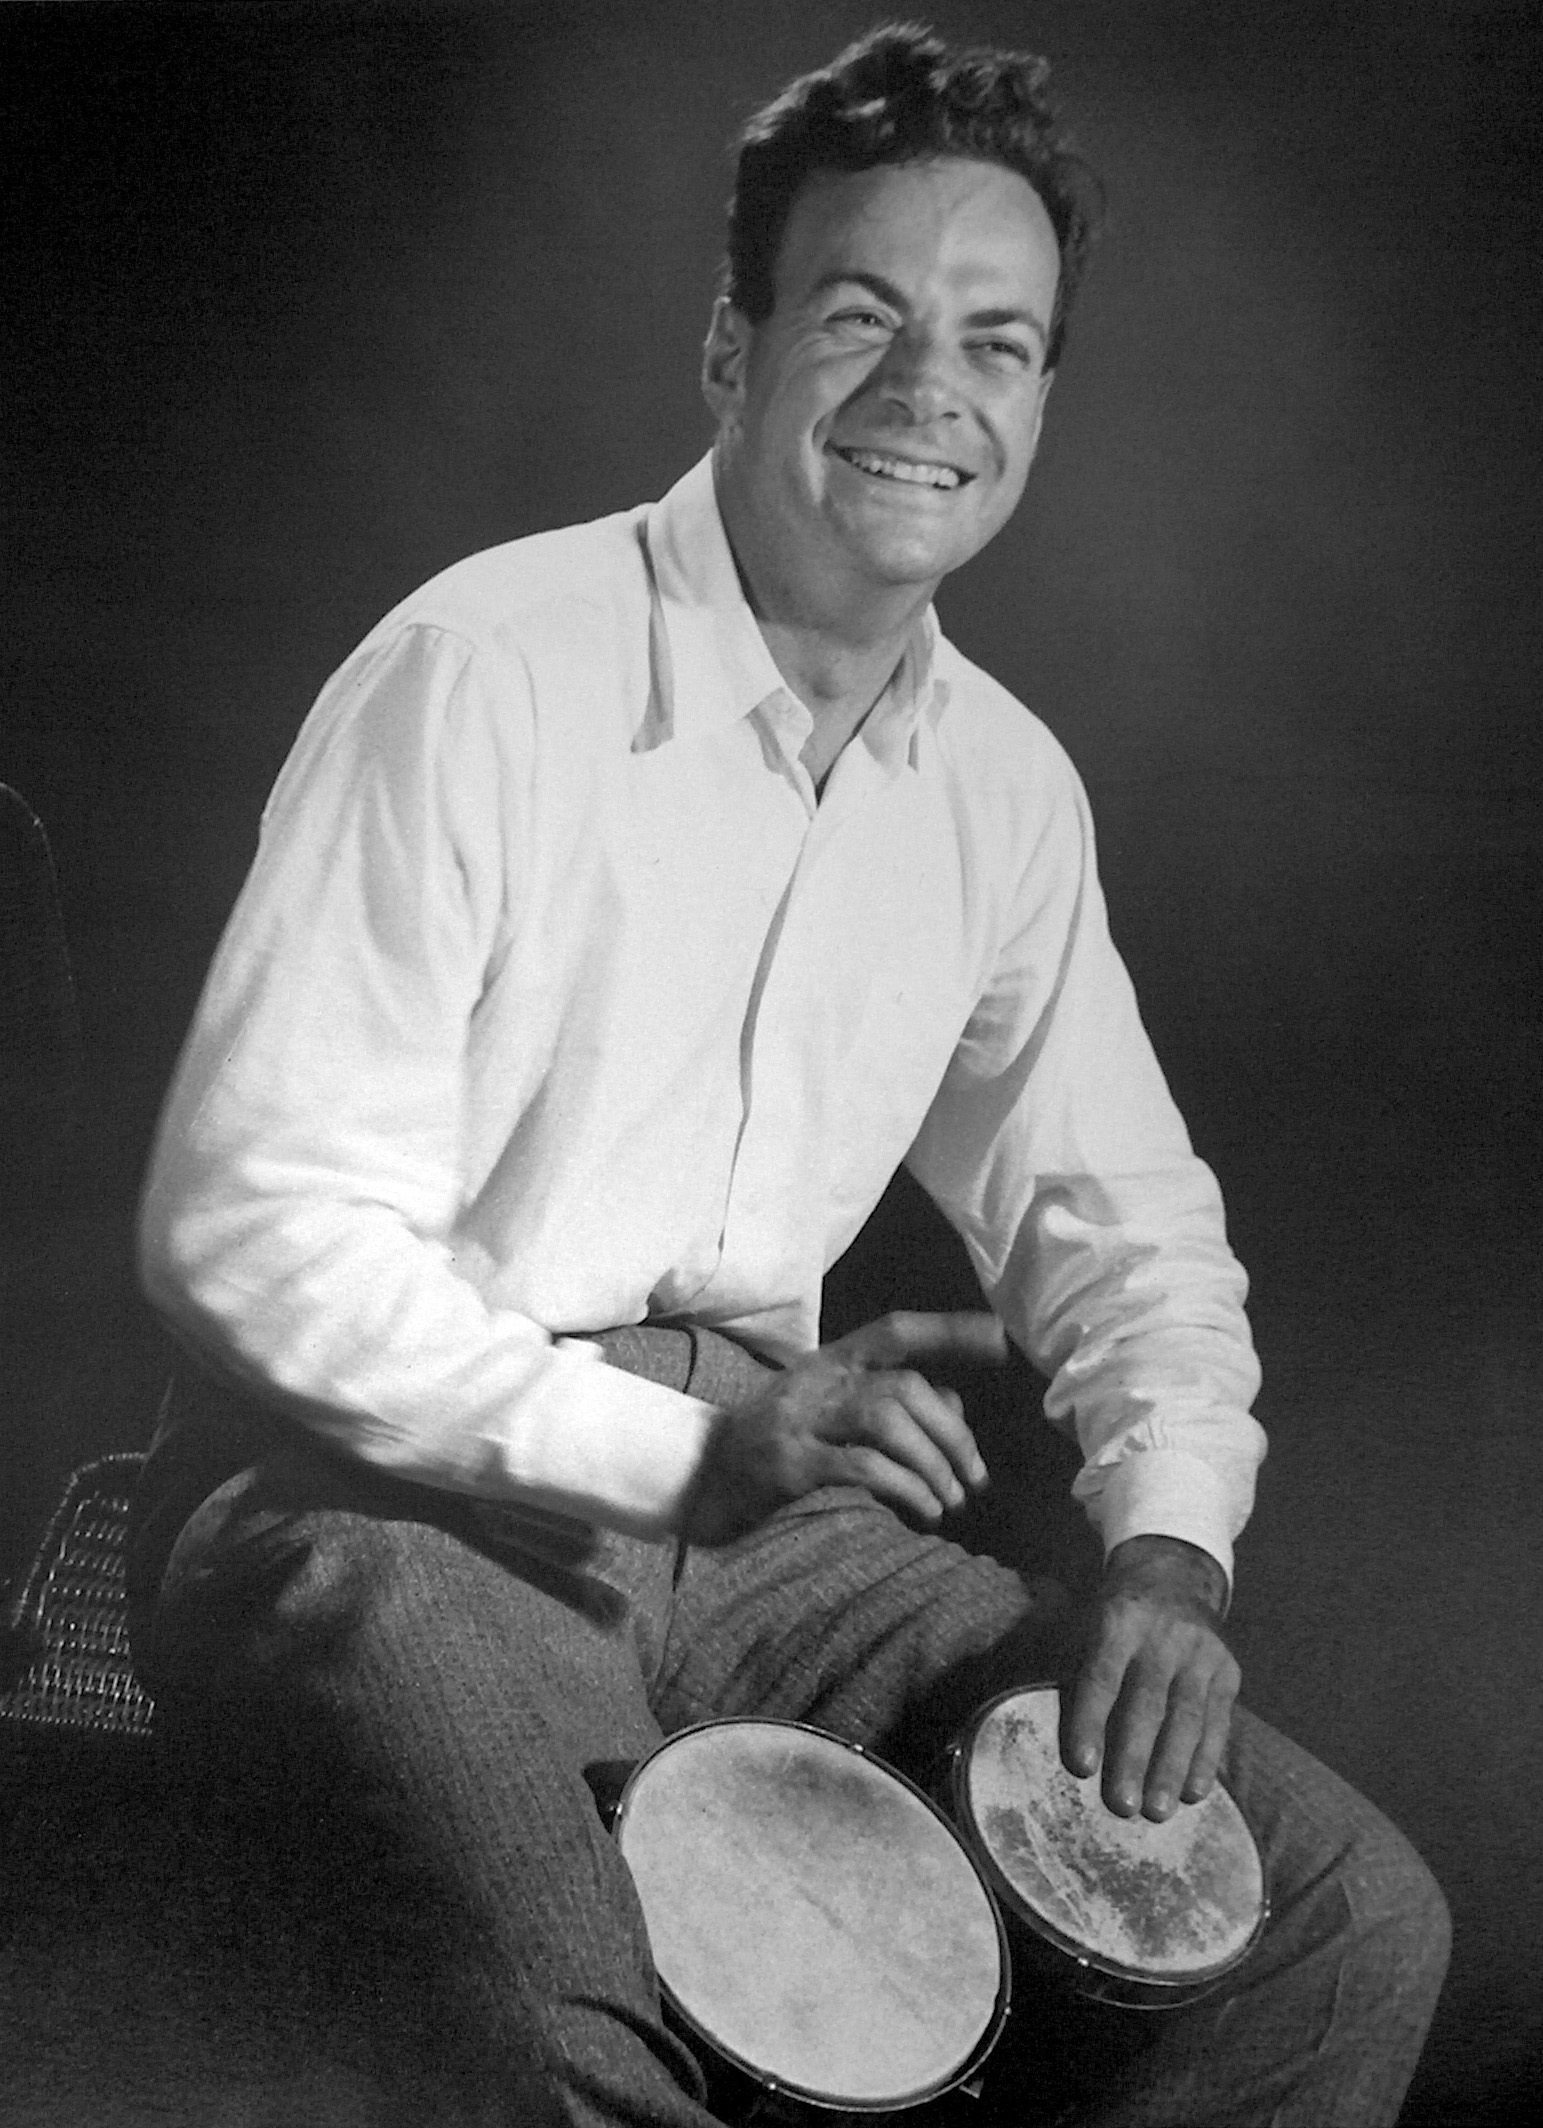 Le prix Nobel de physique Richard Feynman s'est intéressé à la réalisation d'ordinateurs quantiques au début des années 1980. Il est considéré comme un des pionniers de ce domaine. © Tom Harvey